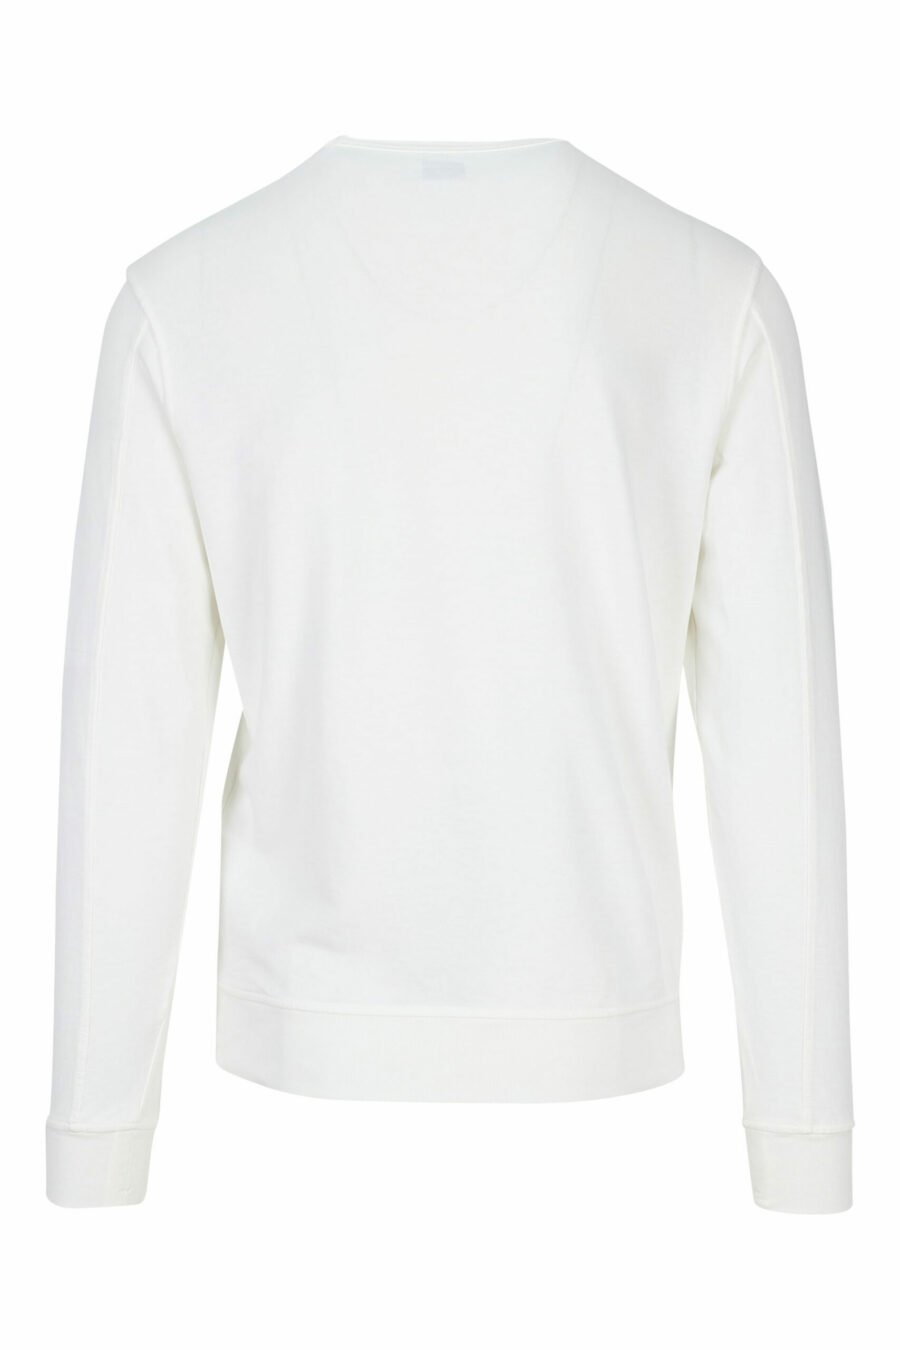 Sweatshirt blanc avec lentille latérale minilogue - 7620943591705 1 à l'échelle